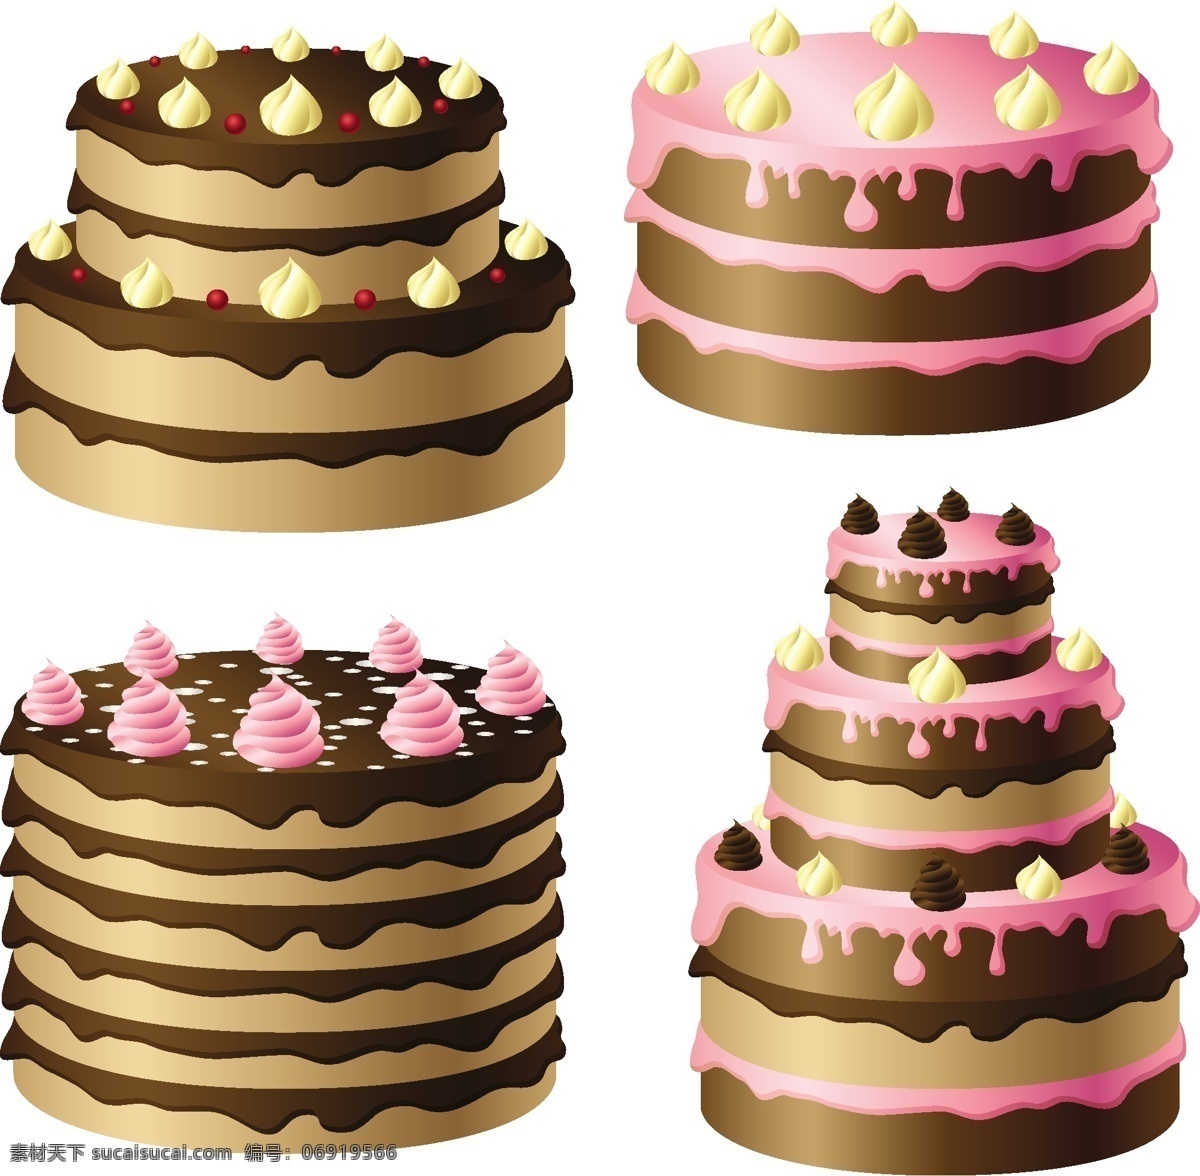 生日蛋糕 蛋糕 蛋挞 糕点 节日素材 蜡烛 矢量 矢量素材 模板下载 甜品 其他节日